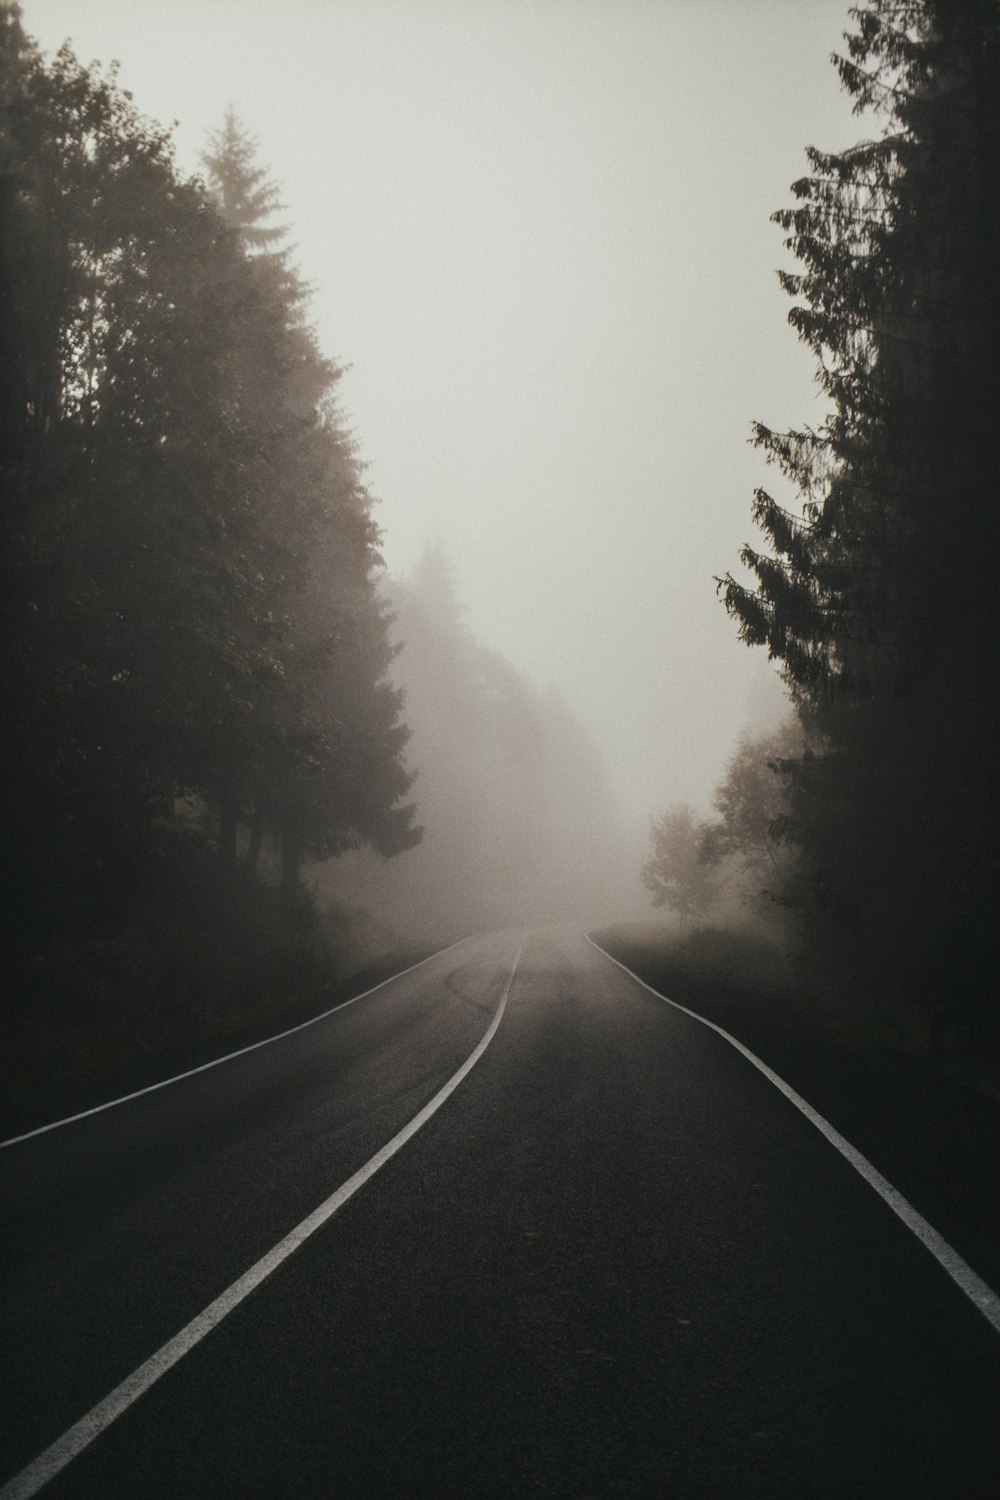 estrada de asfalto preto entre árvores verdes cobertas de nevoeiro durante o dia